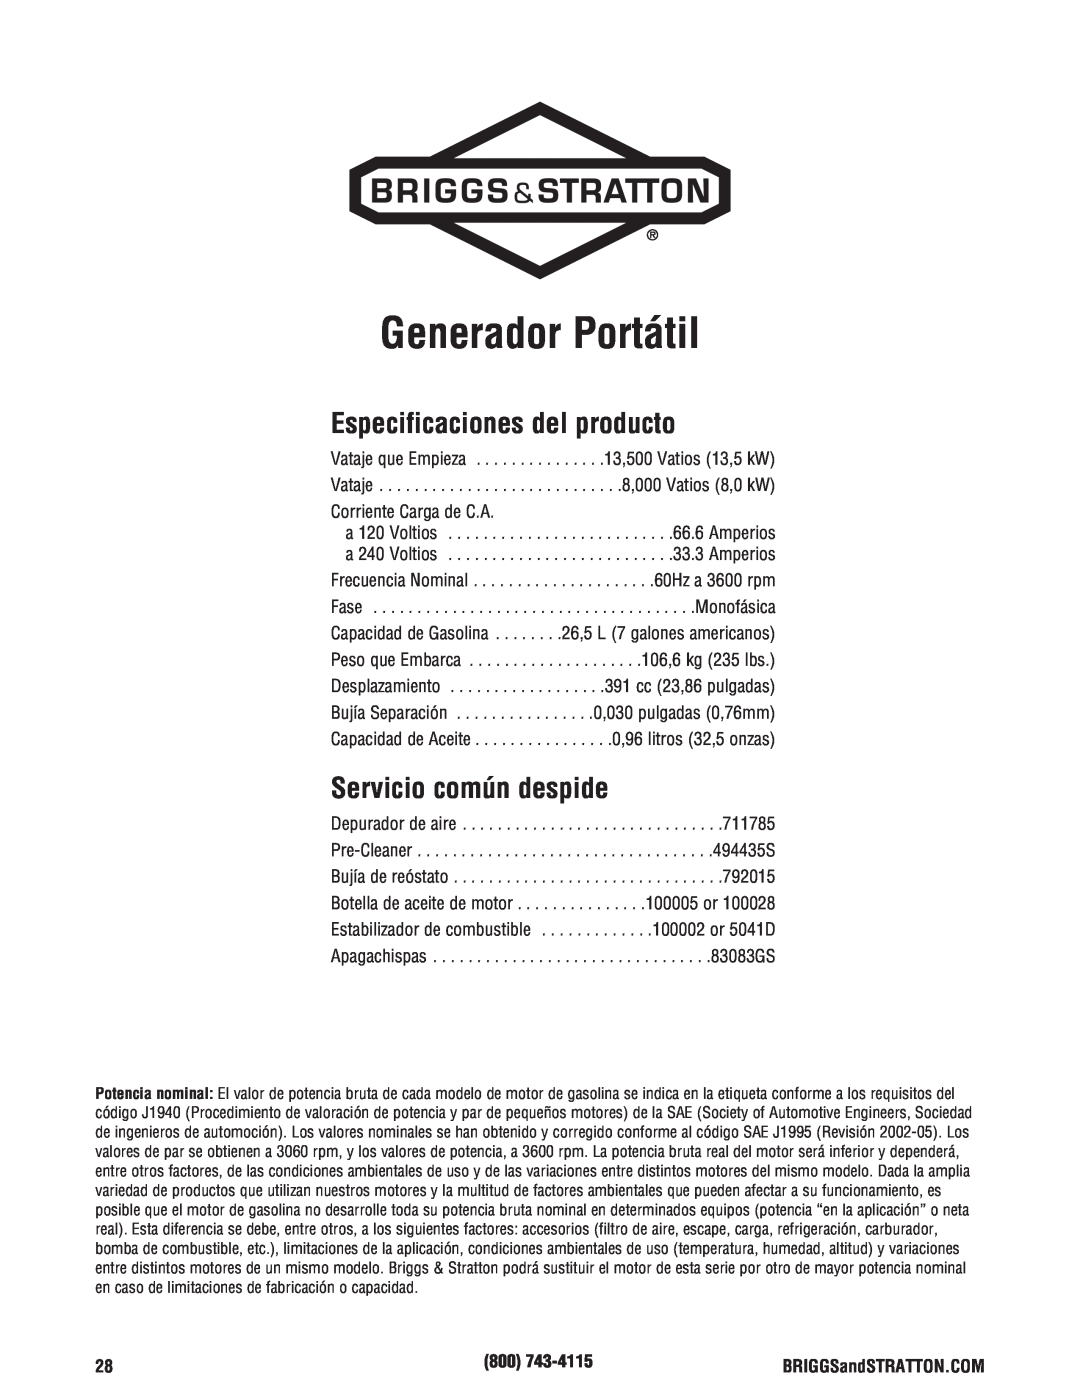 Briggs & Stratton 8000 Watt Portable Generator Generador Portátil, Especificaciones del producto, Servicio común despide 